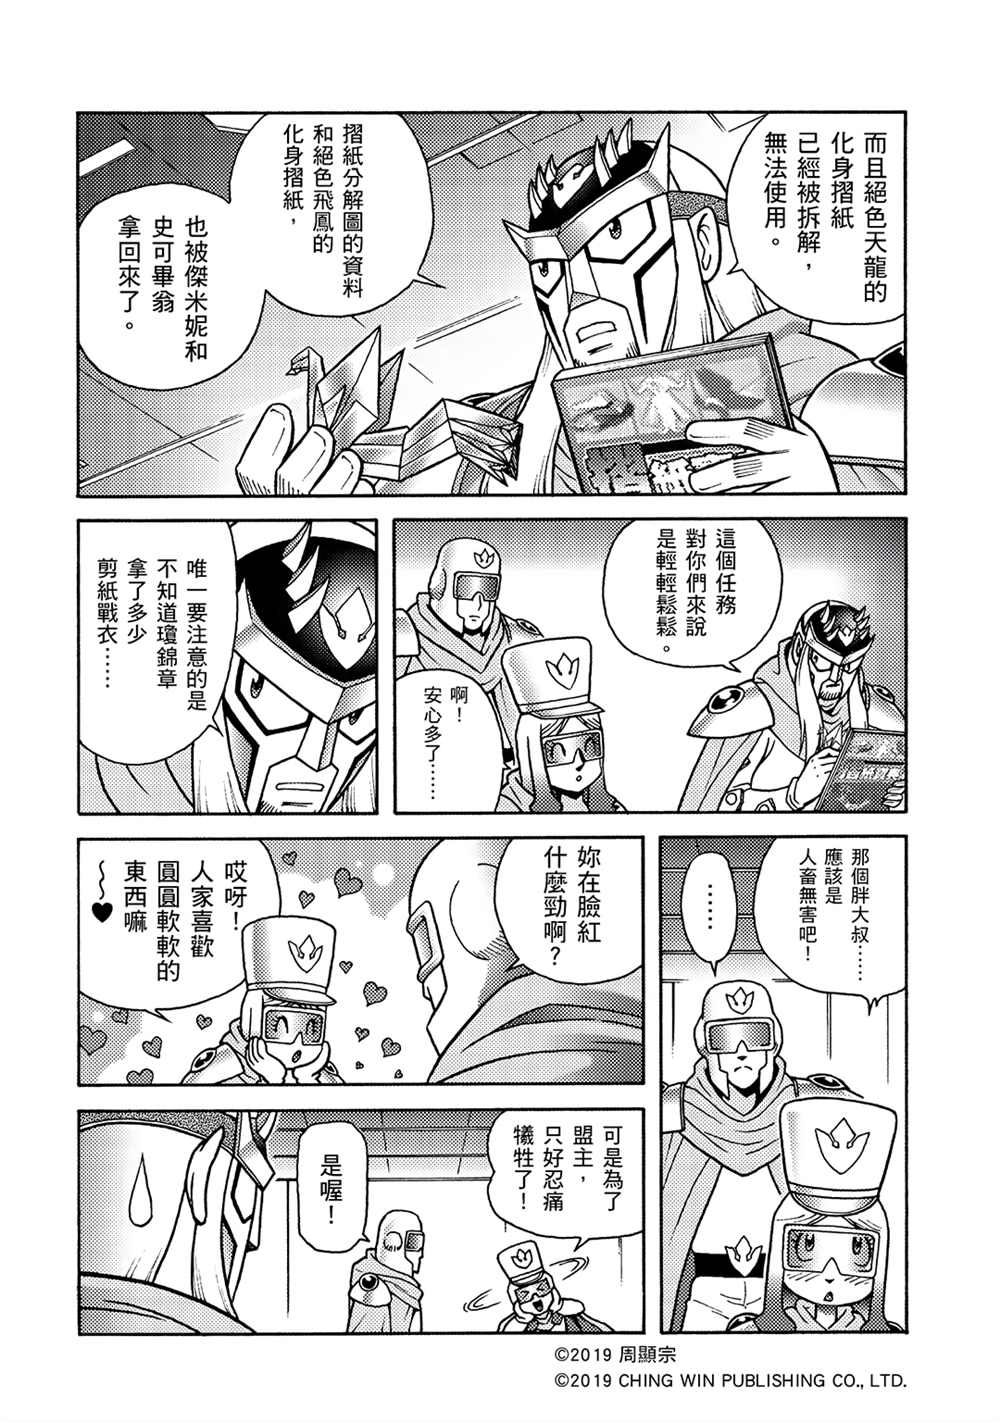 折纸战士A漫画,第4回红色天龙重生5图